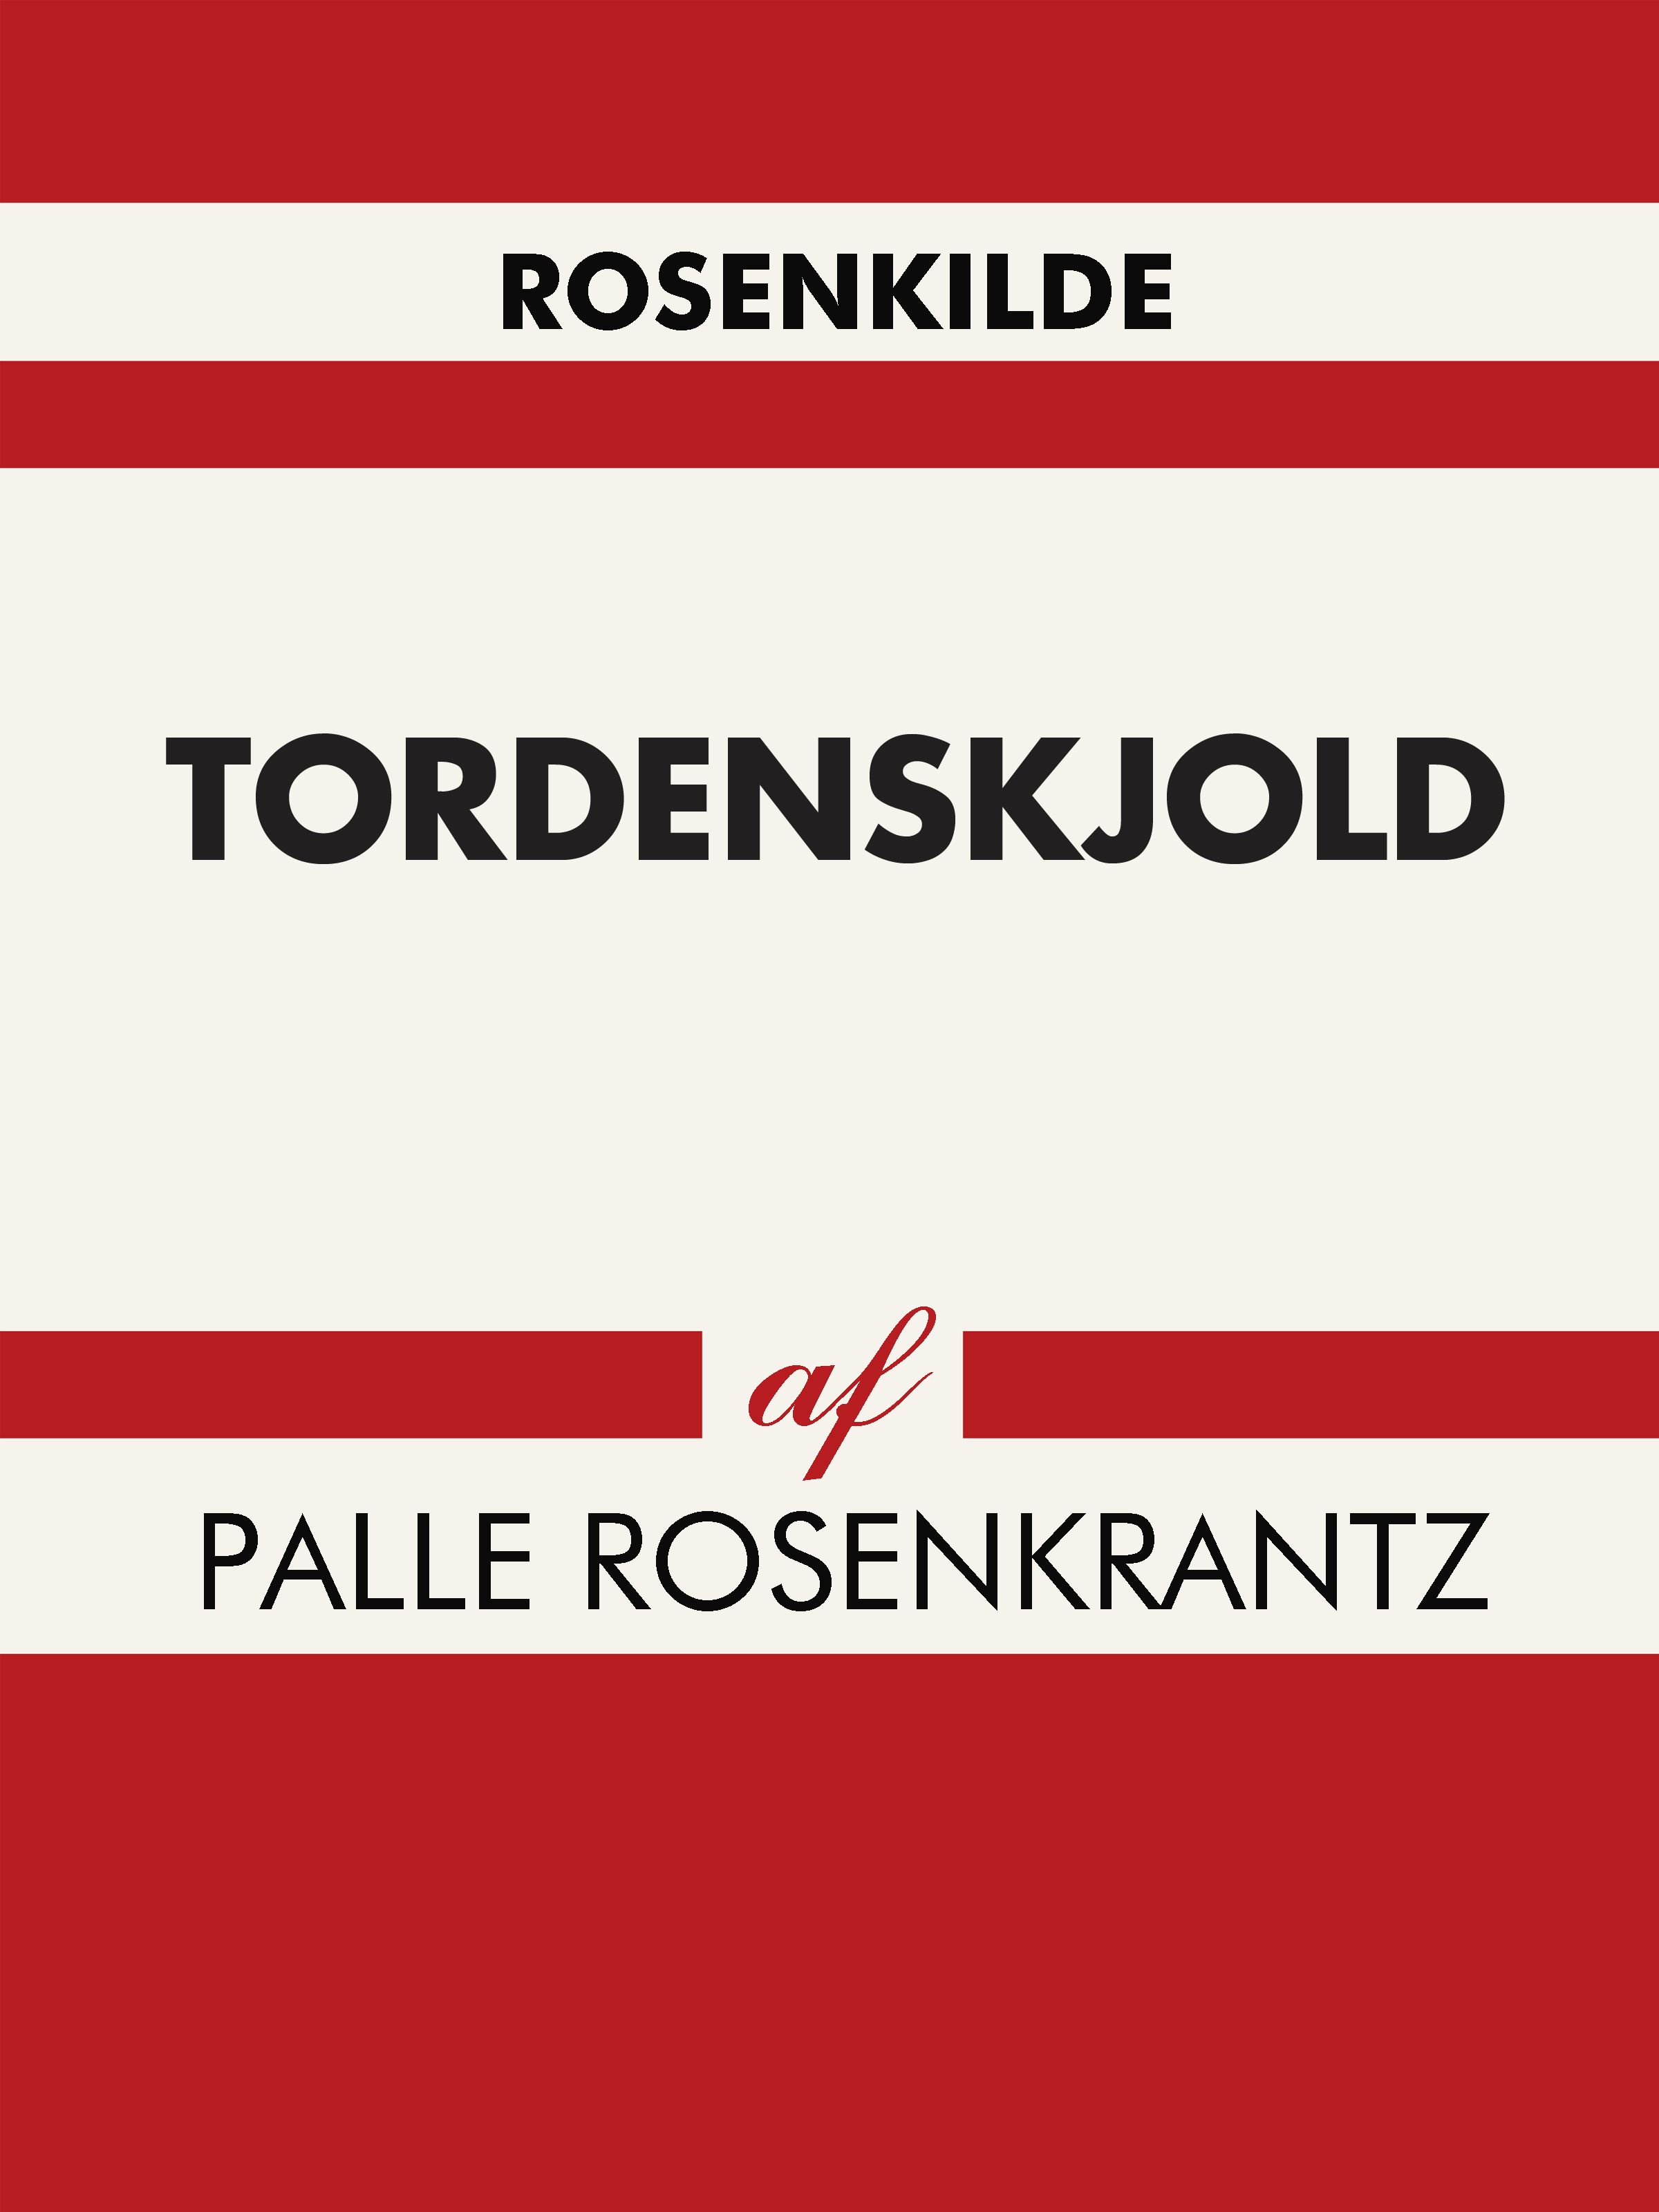 Tordenskjold, eBook by Palle Rosenkrantz